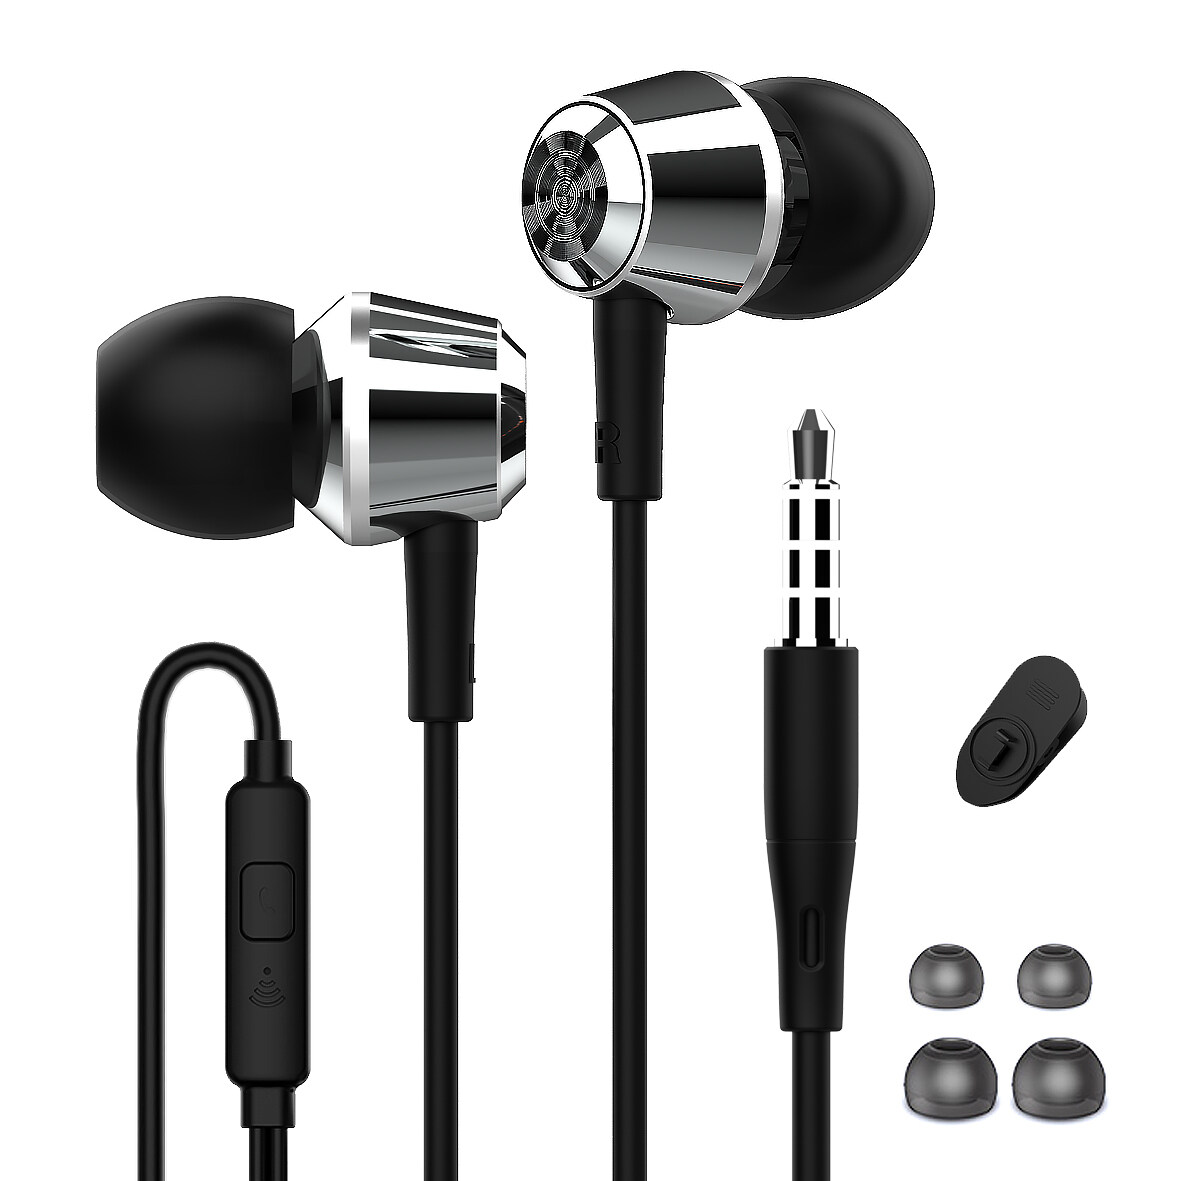 HappyAudio; Amazon kablede ørepropper; Kablede øretelefonprodusenter; OEM -øretelefoner; Engros øretelefoner;